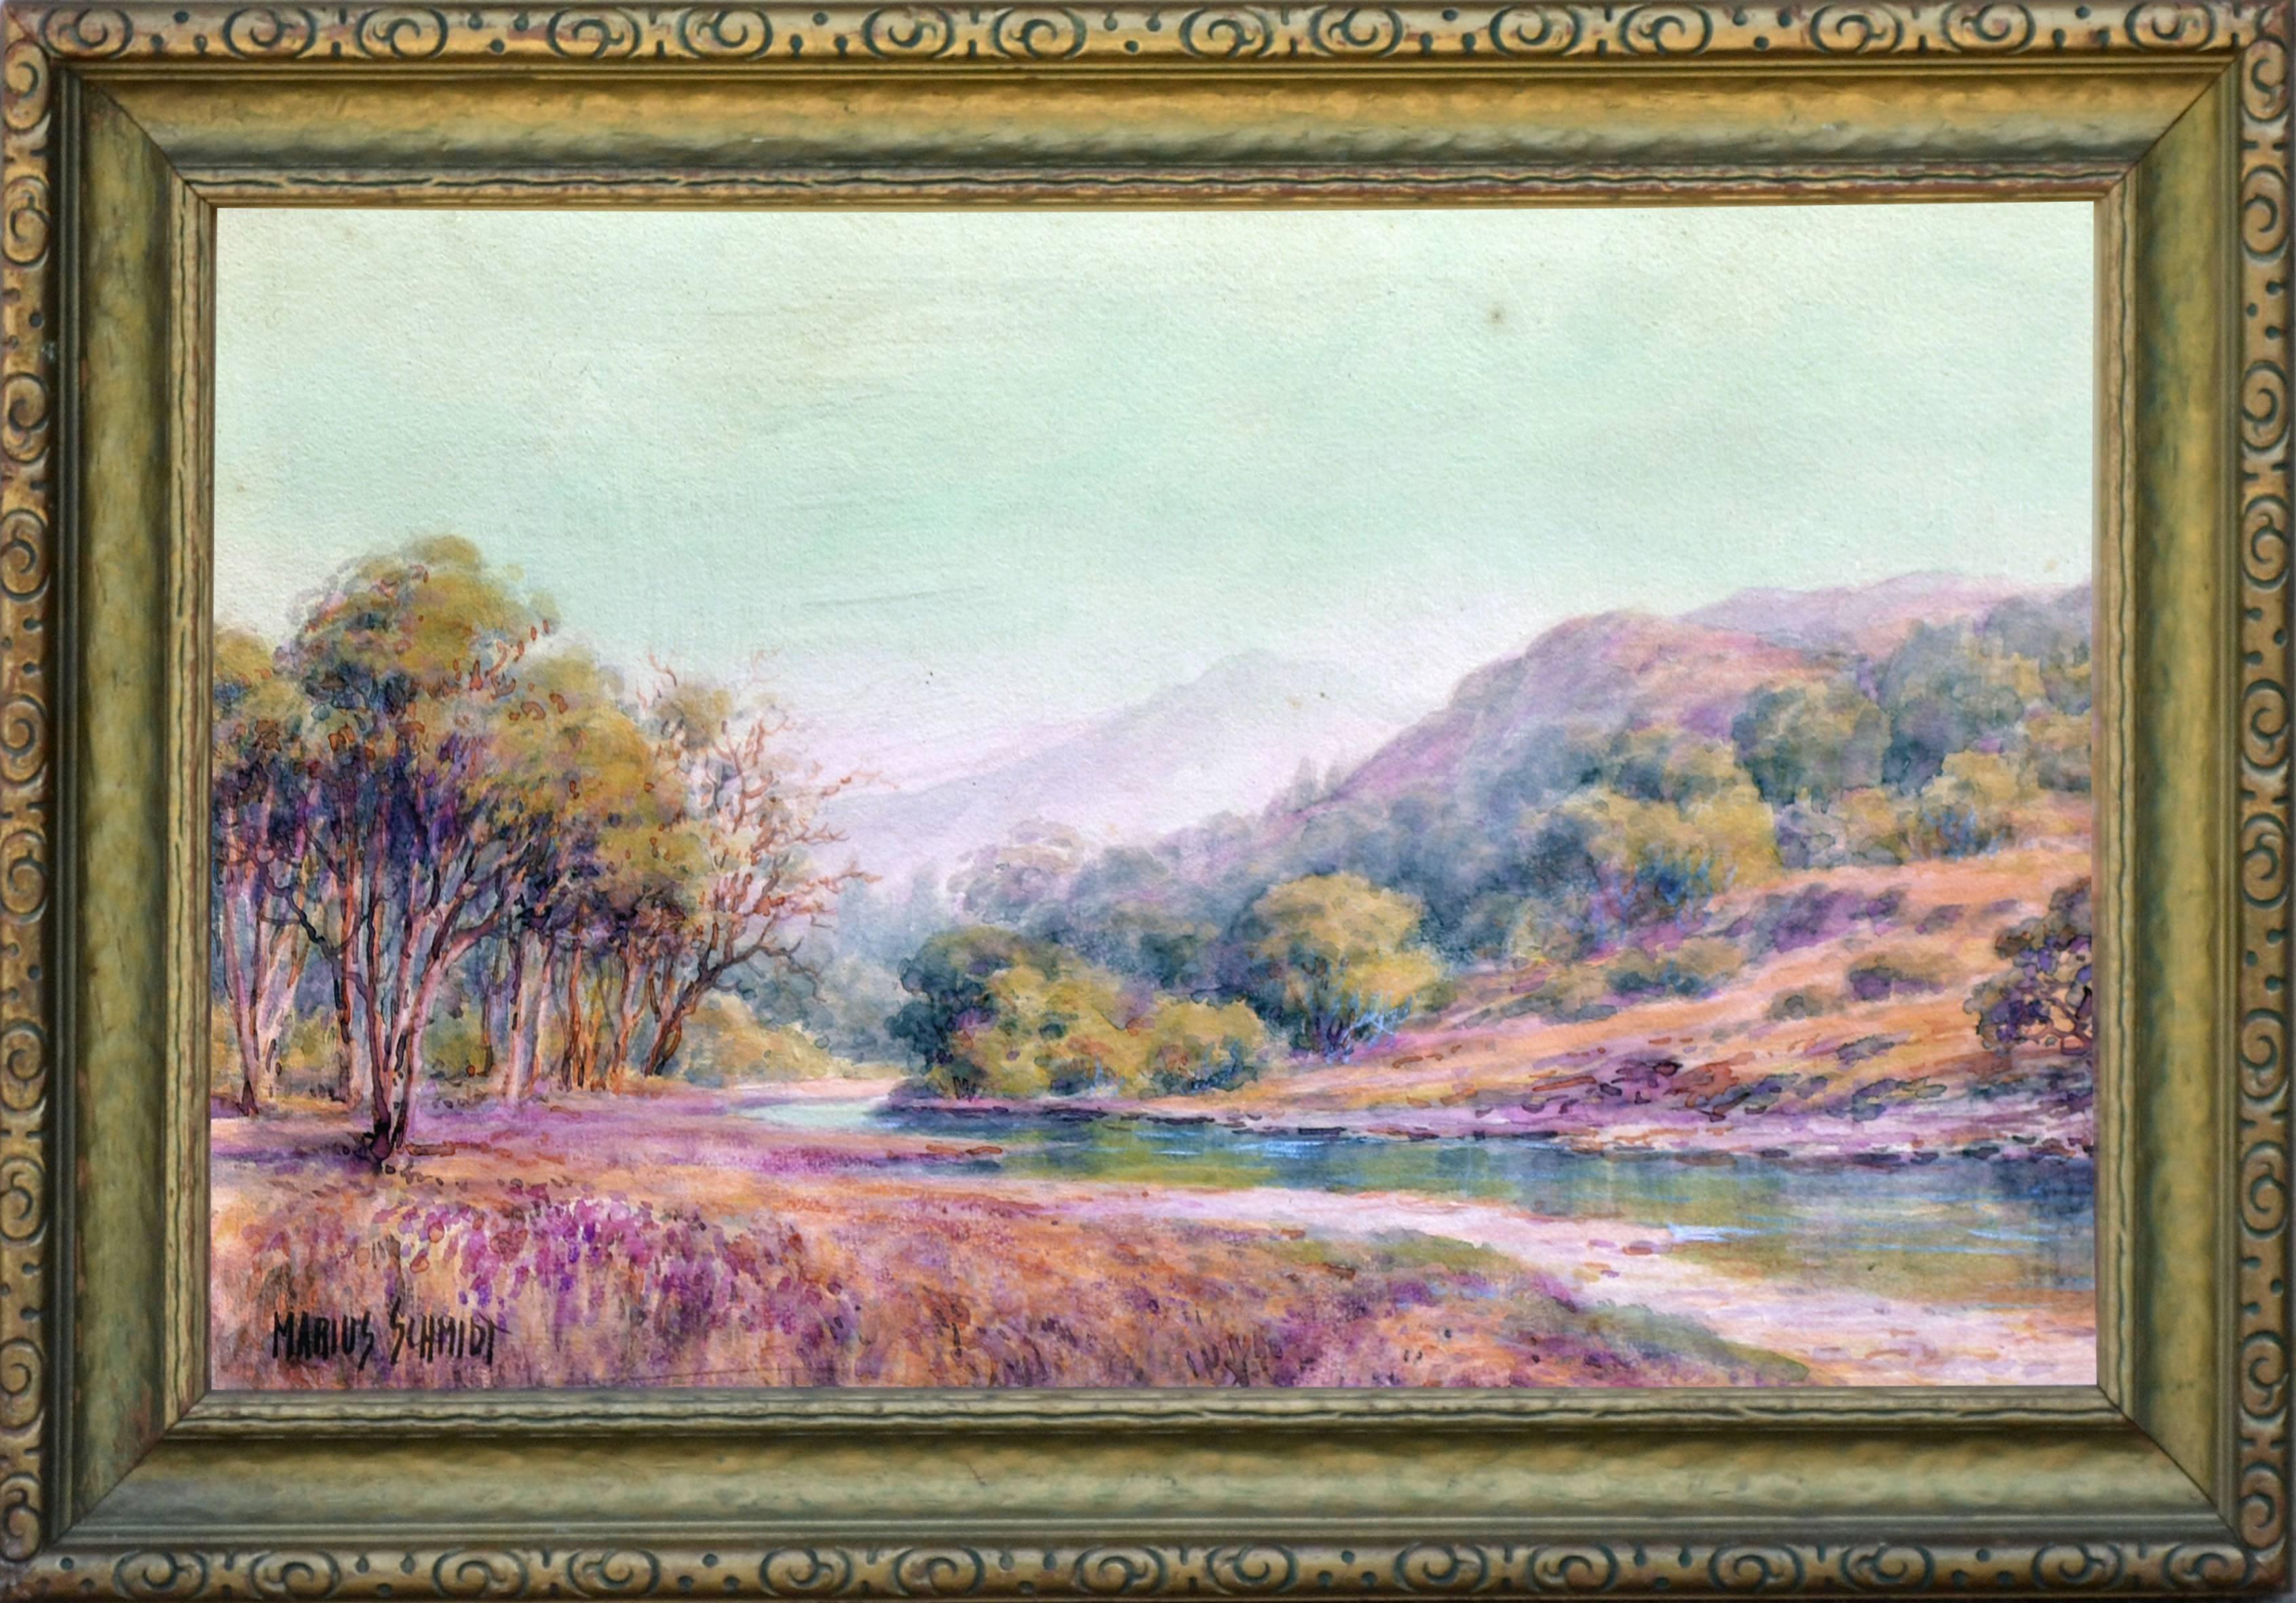 Marius Schmidt Landscape Painting - Alameda River Below Mt. Tamalpais - Early 20th Century Landscape 